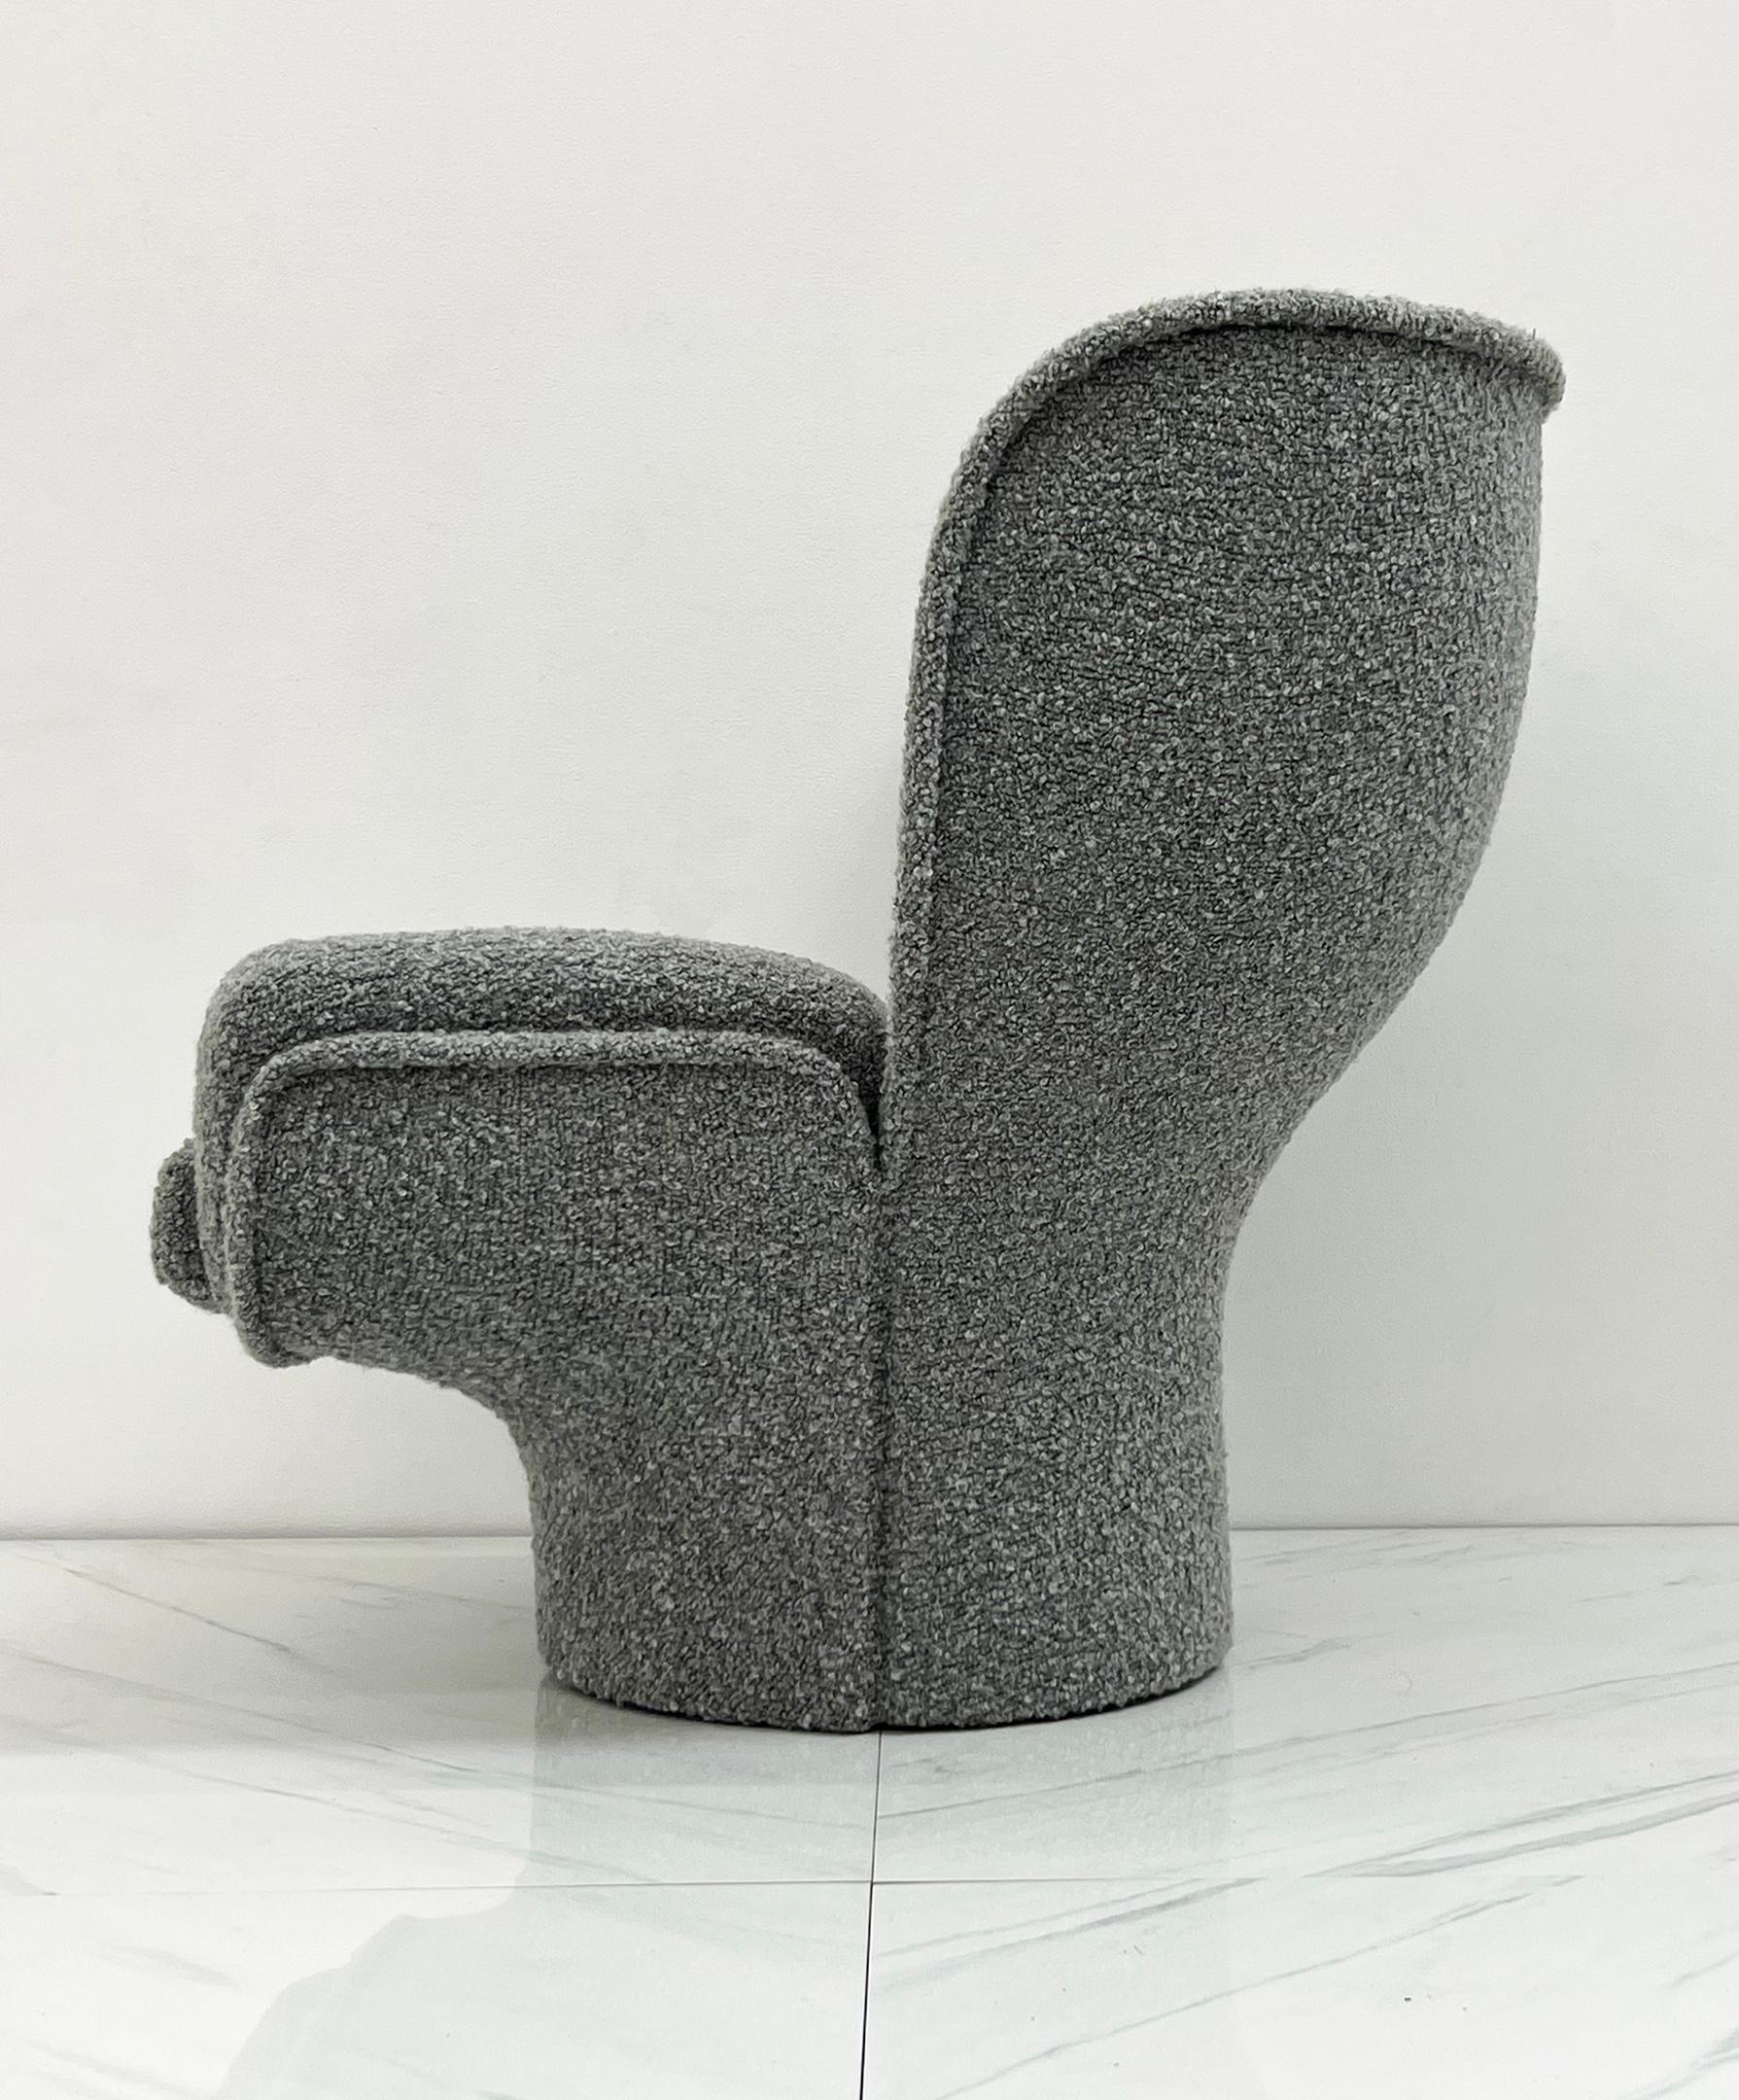 Bouclé Joe Colombo Elda Chair Wrapped in Grey Belgian Boucle, 1960's